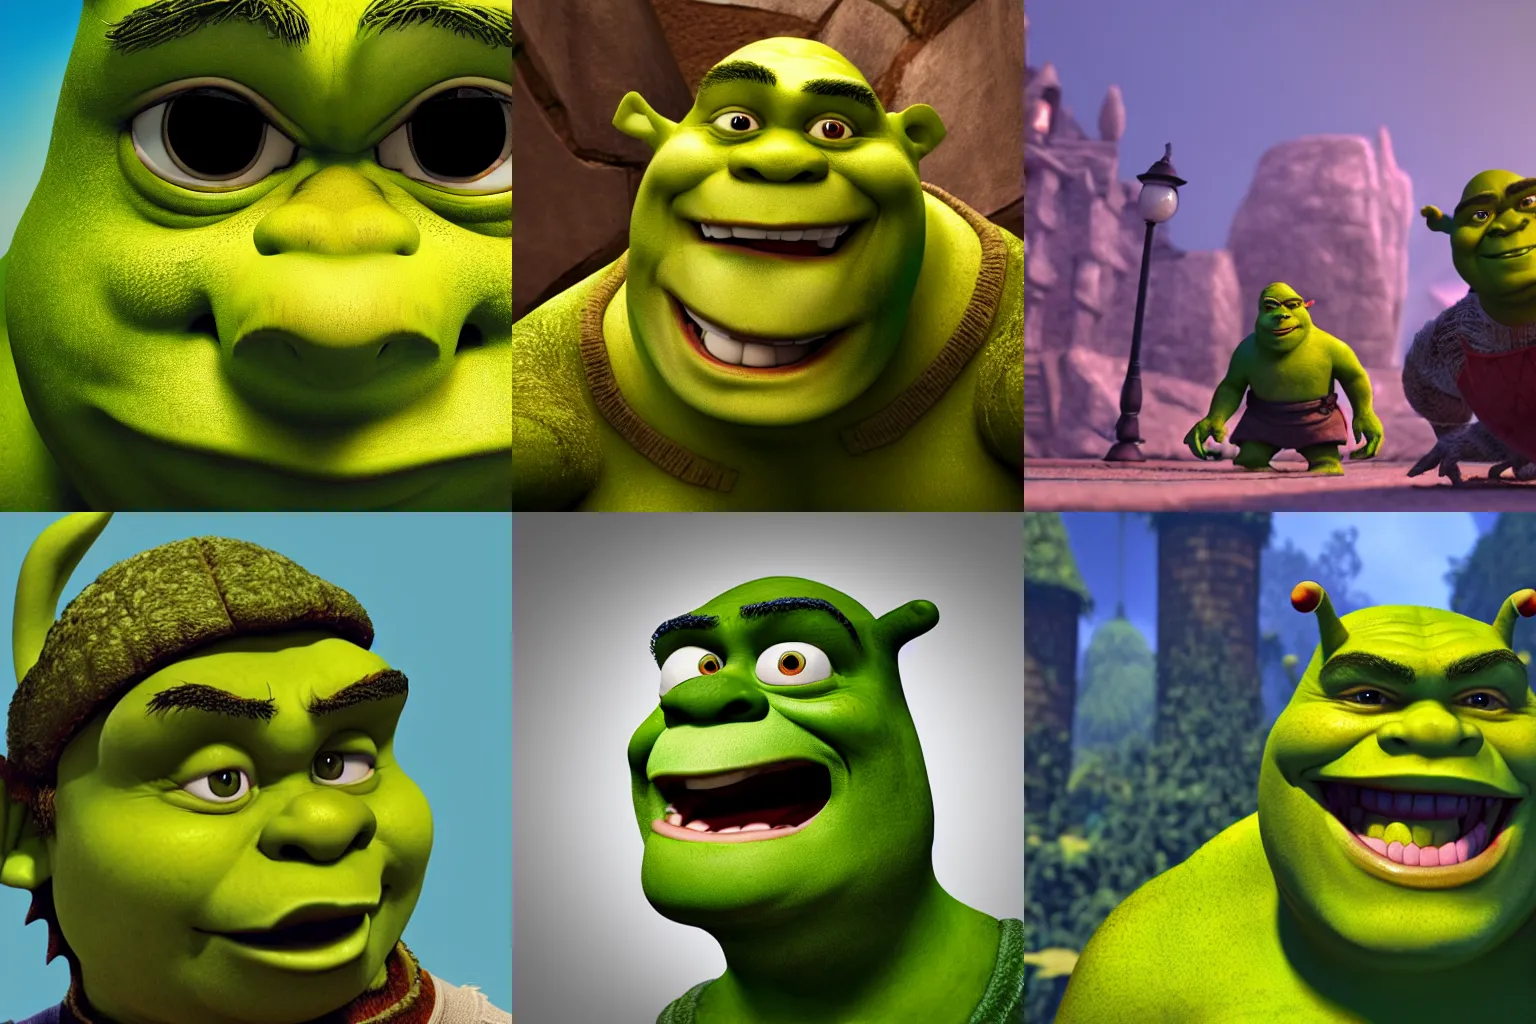 Prompt: Shrek is very angry, worm\'s eye view, fisheye lens, octane render